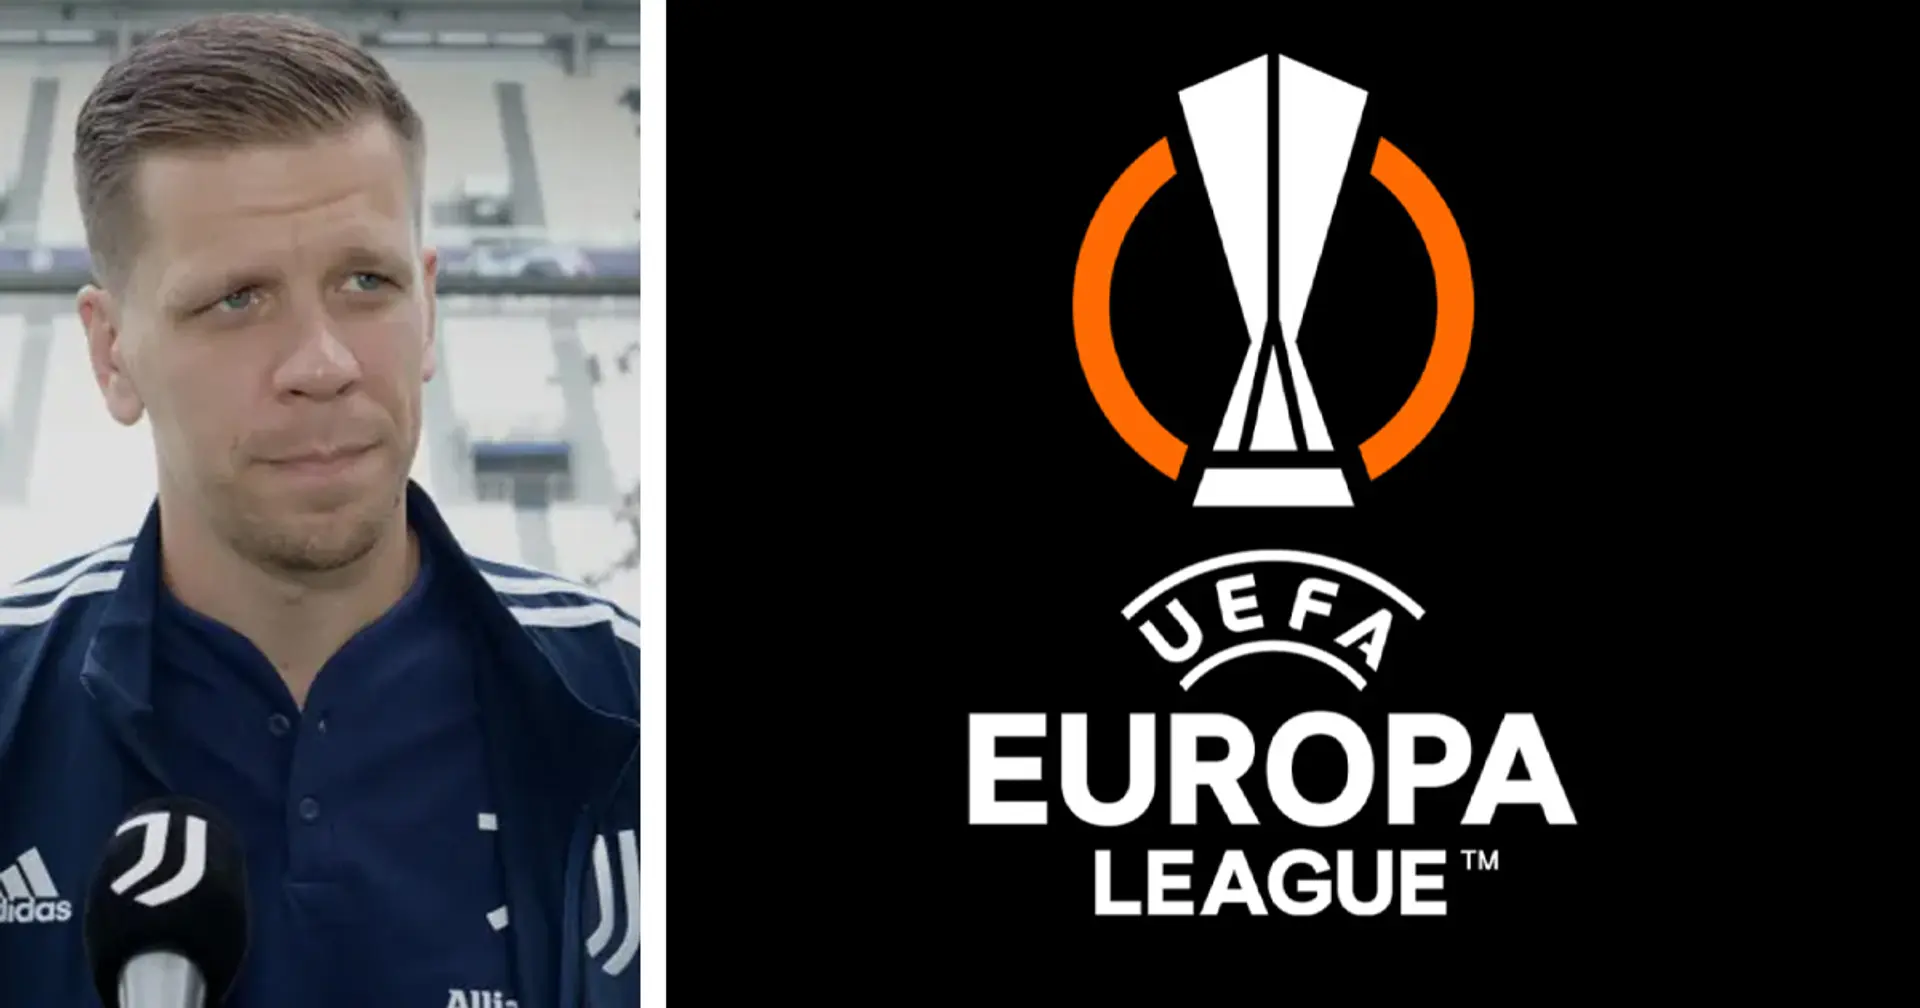 "Giochiamo per vincerla": Szczesny non 'snobba' l'Europa League, e manda un messaggio alla Juventus